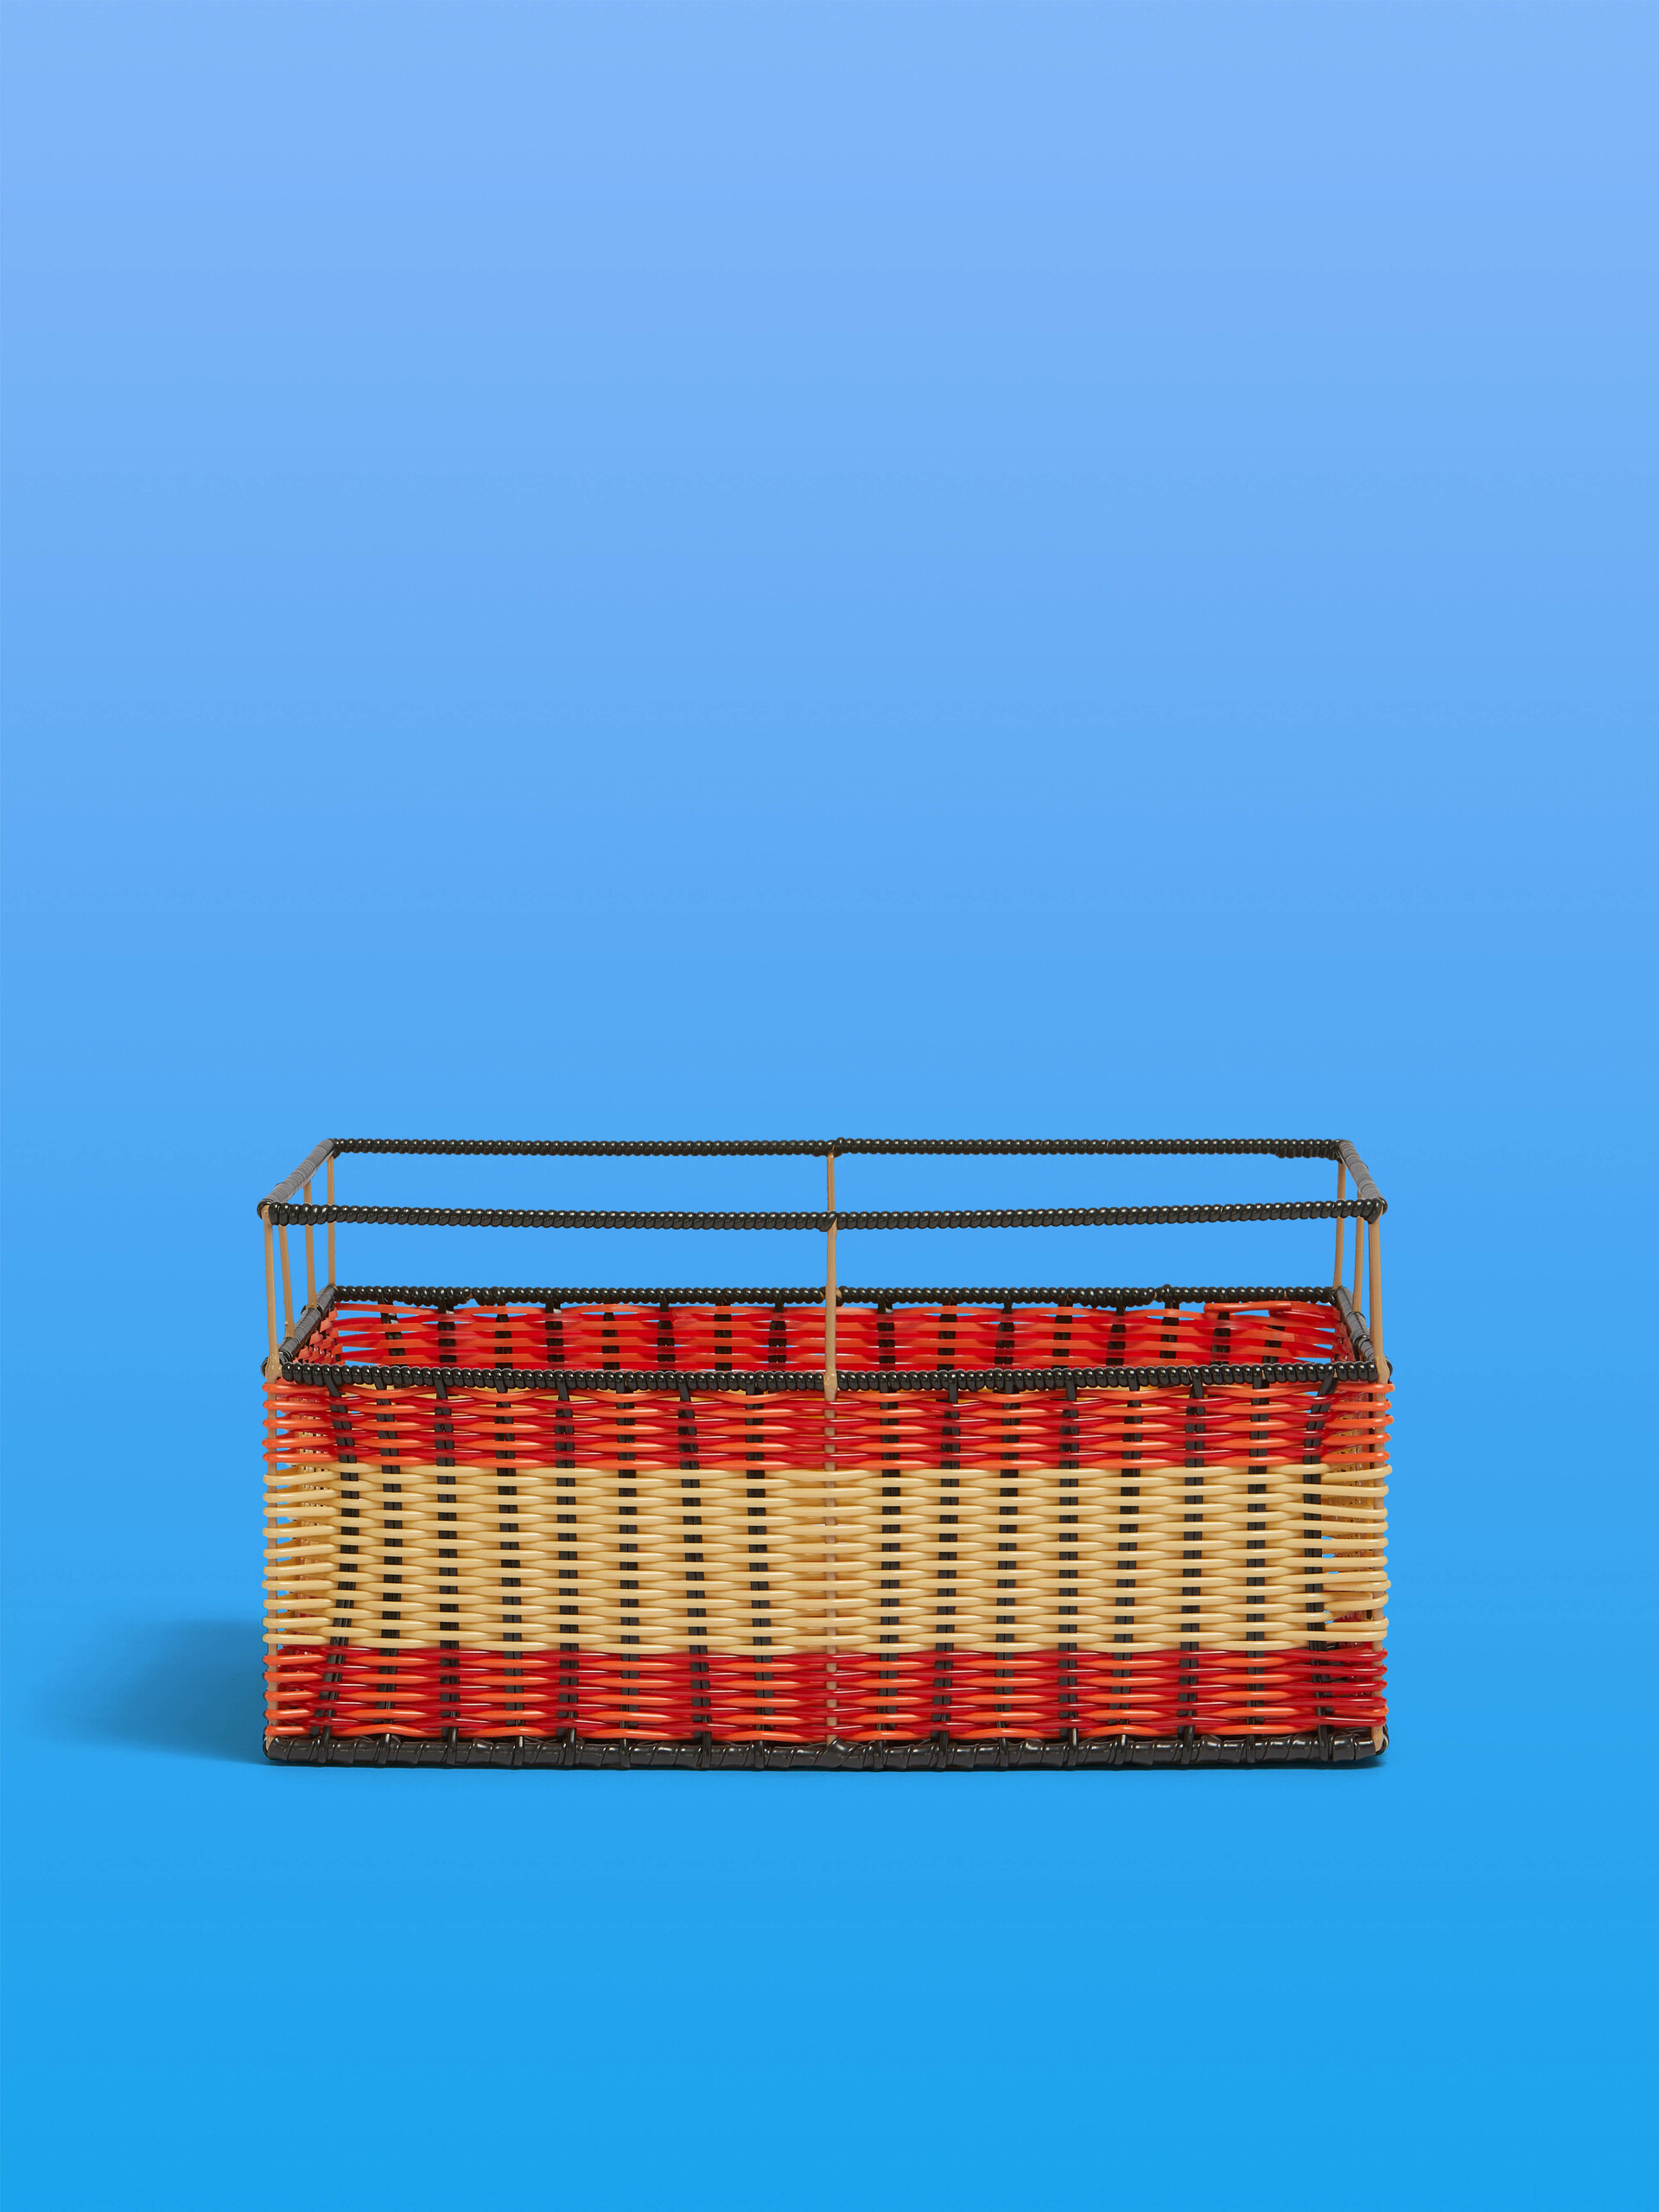 Orange and red Marni Market rectangular storage basket - Furniture - Image 1